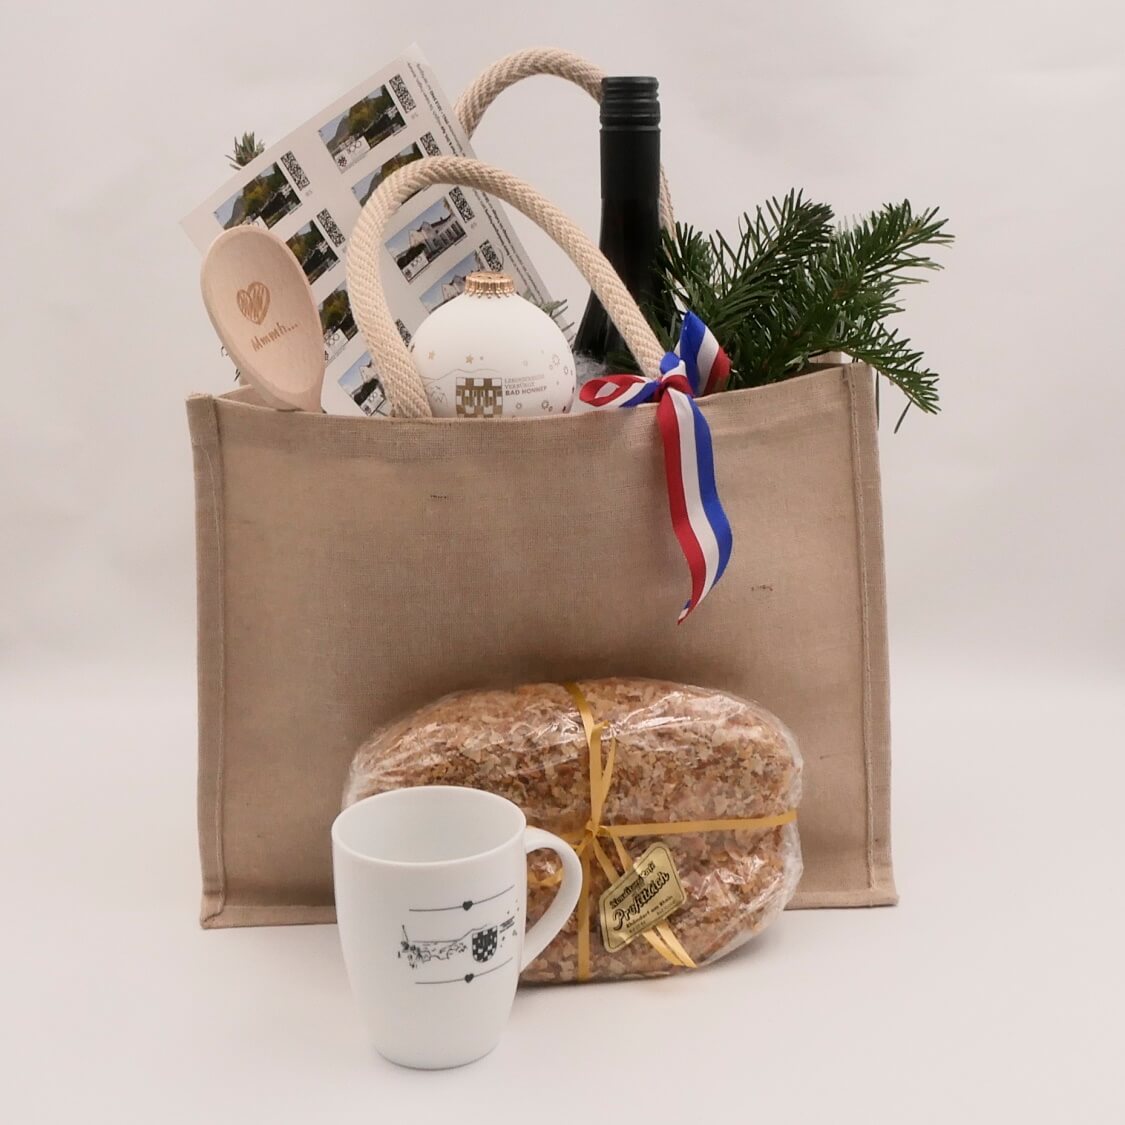 Jutetasche gefüllt mit weihnachtlichen Geschenkideen aus der Bad Honnef-Kollektion: Kochlöffel, Weihnachtsstollen, Weichnachtskugel, Weihnachtstasse, Winzer-Glühwein